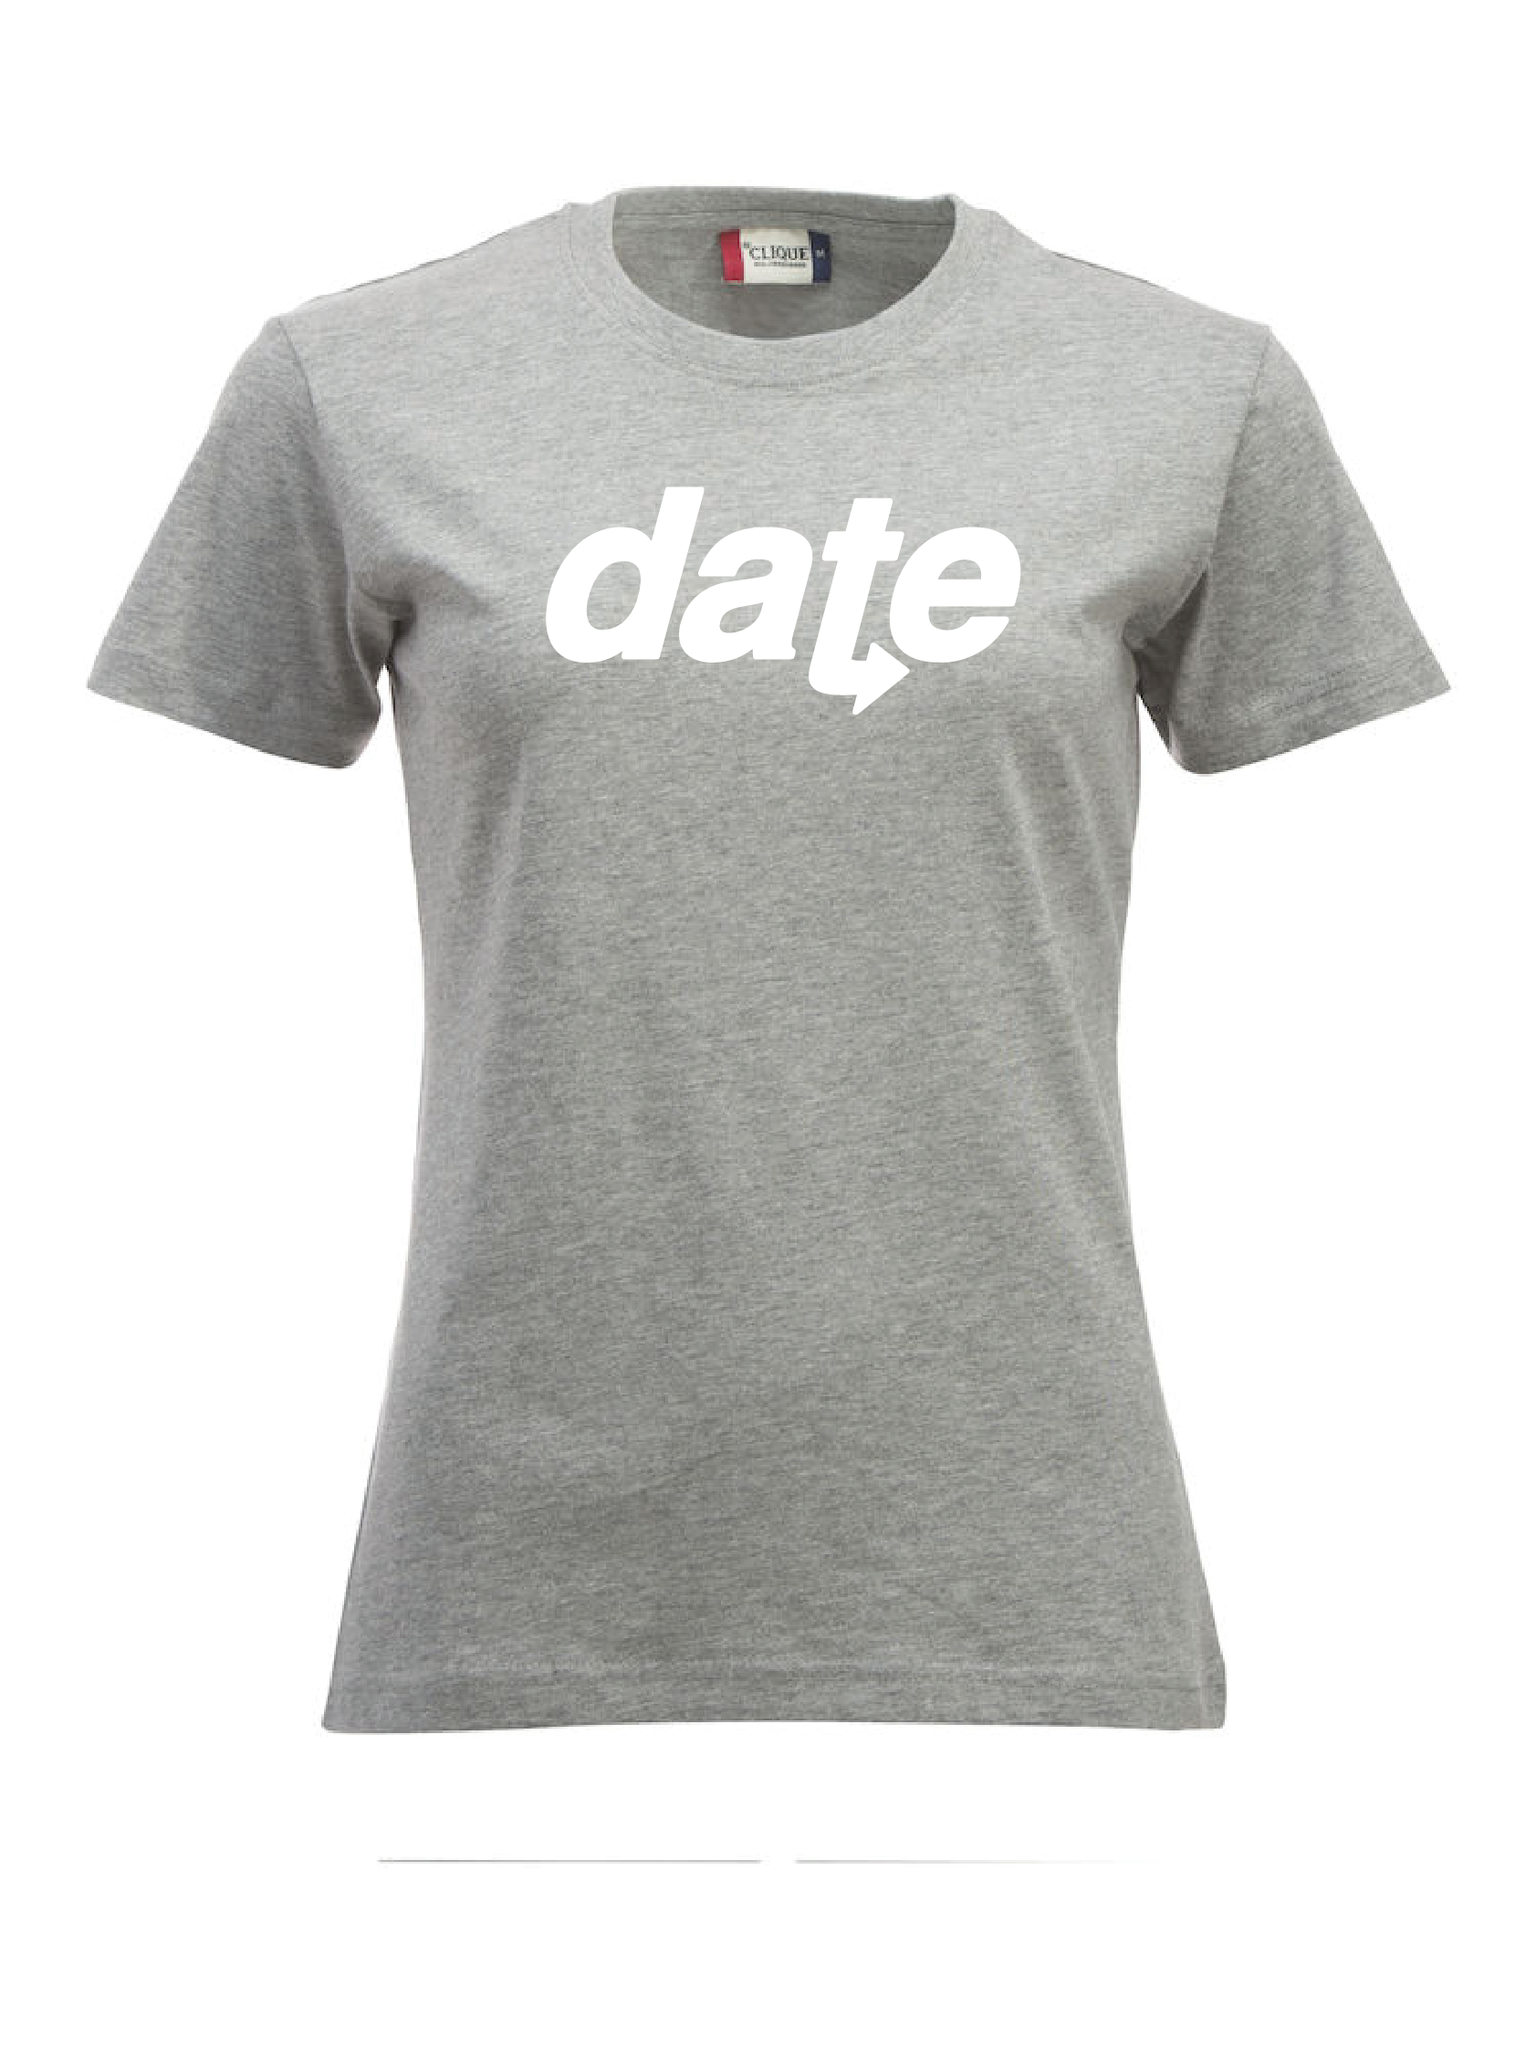 Grå Dam T-shirt "DATE" vit